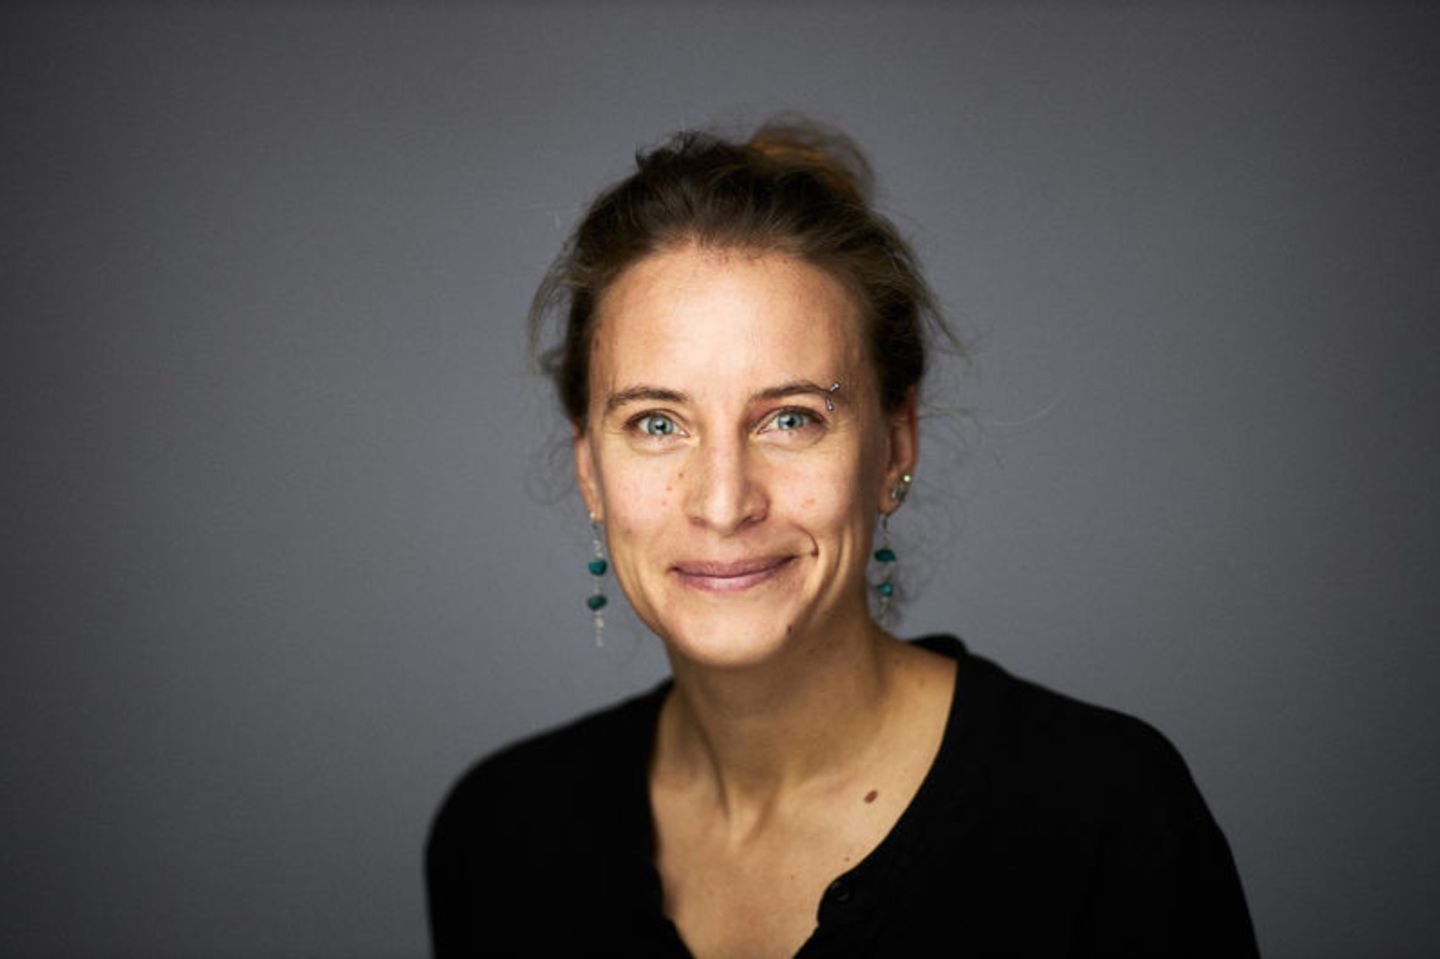 Die aus Deutschland stammende Klimaforscherin Friederike Otto zählt nach Einschätzung des Magazins "Nature" zu den derzeit maßgebenden Wissenschaftlern auf der Welt